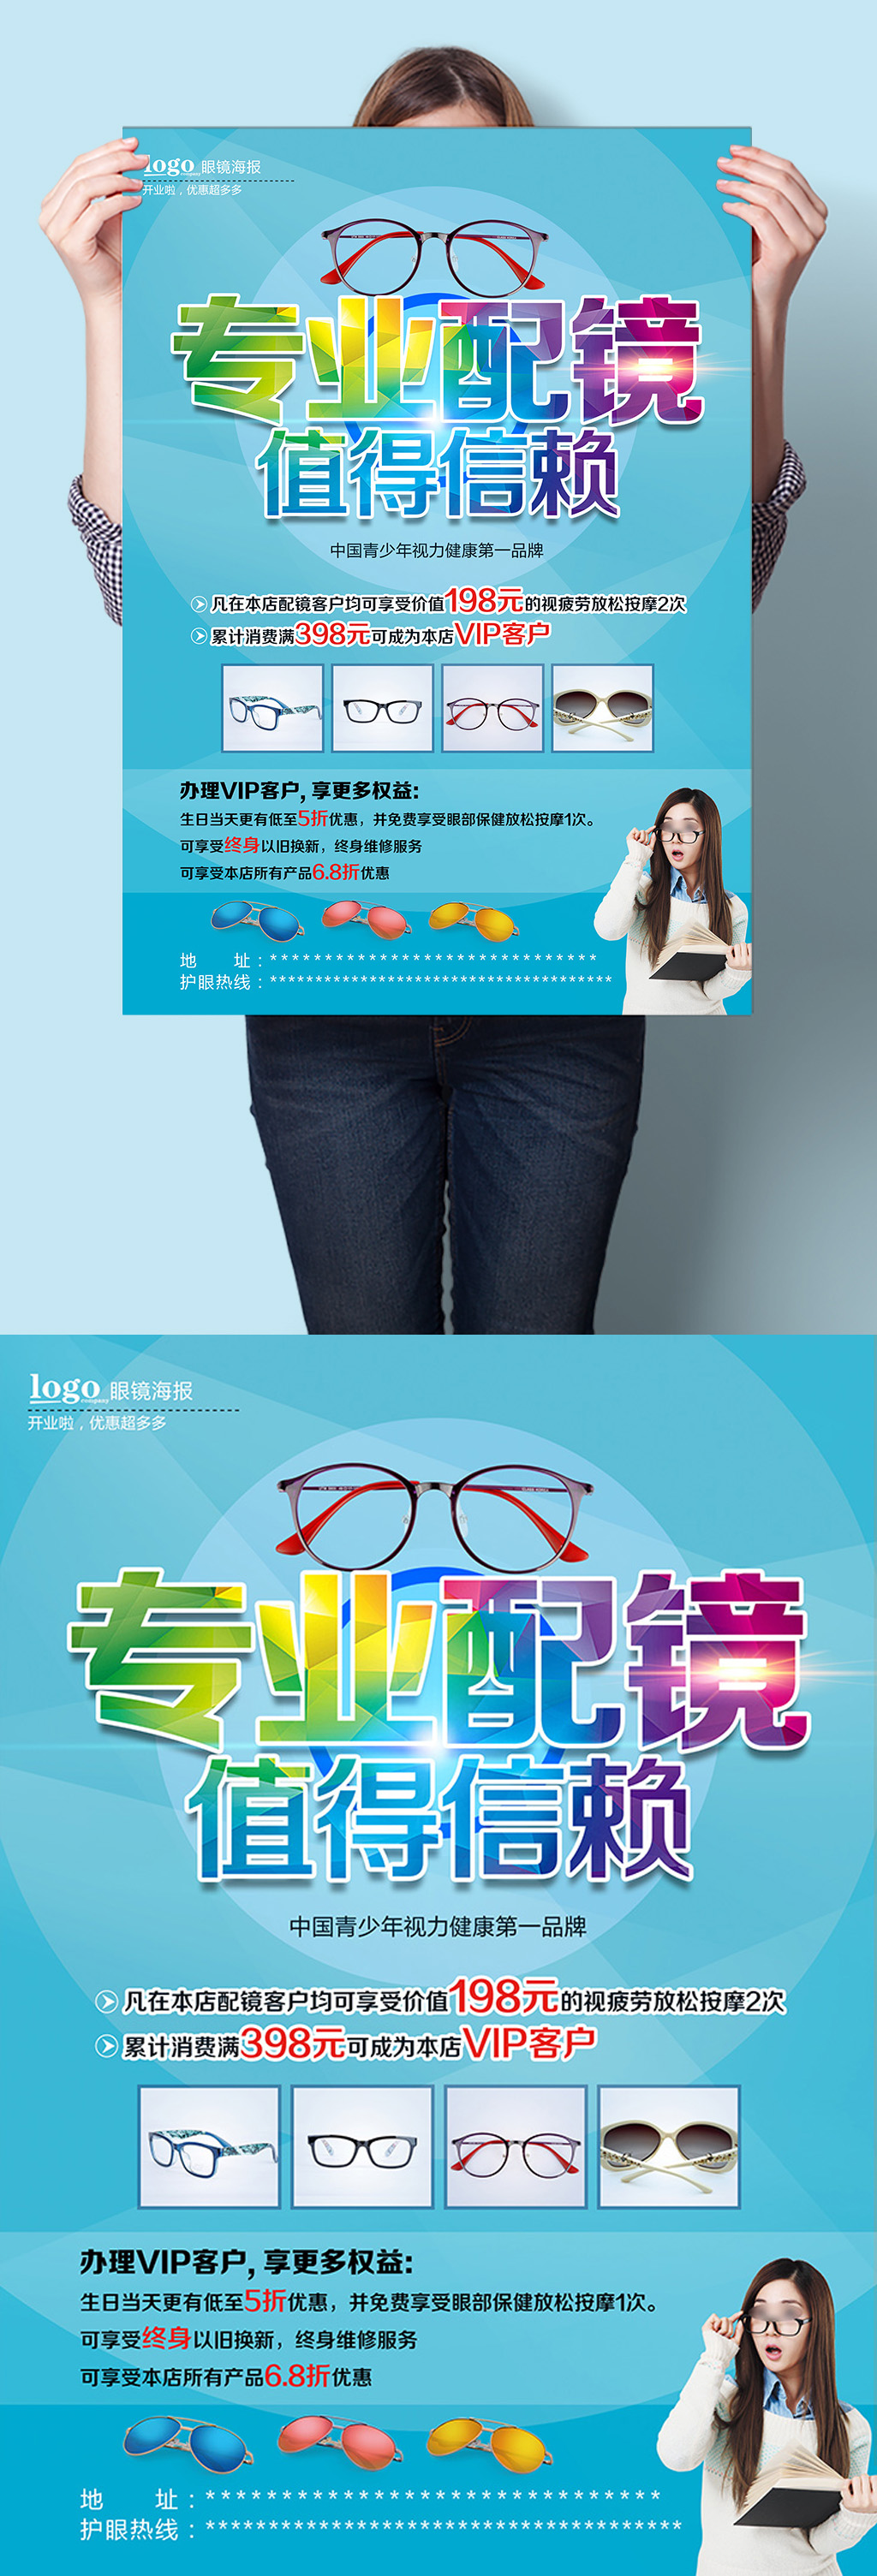 专业配镜值得信赖眼镜店活动宣传海报